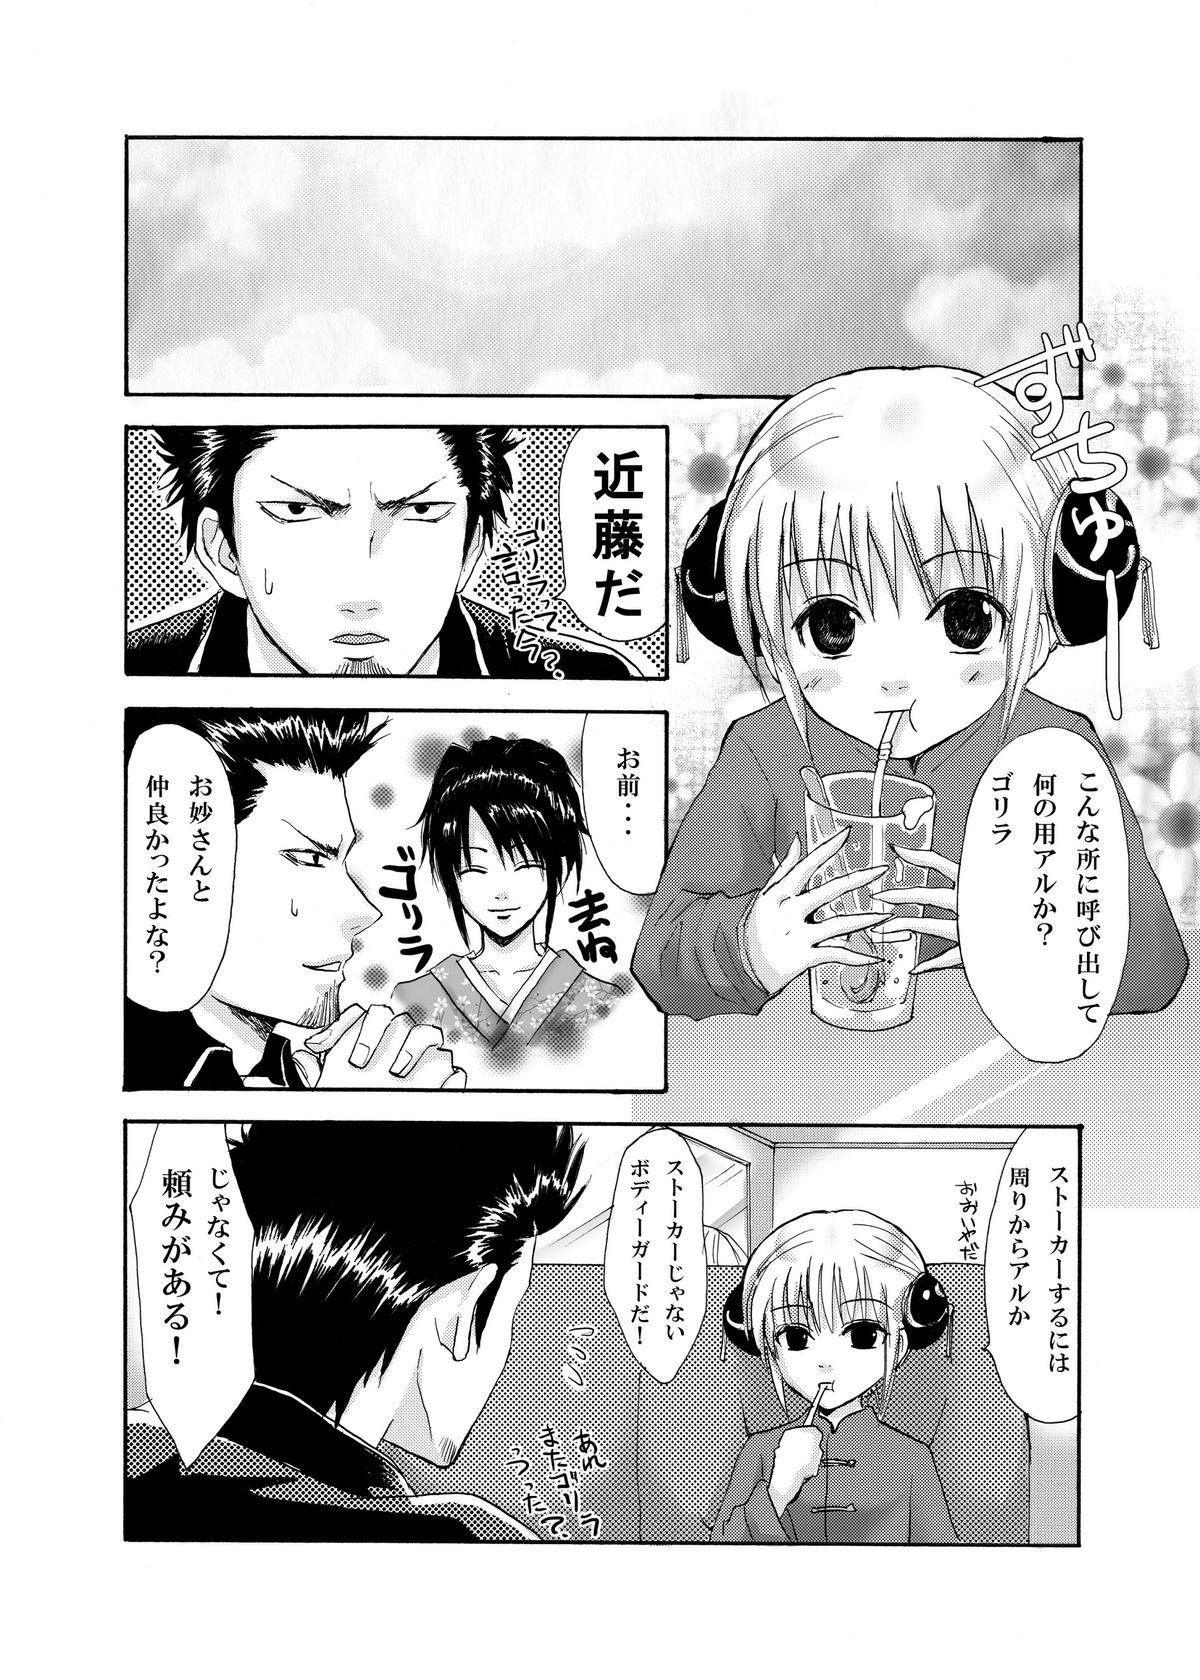 Furry Rakutama - Gintama Step Brother - Page 6